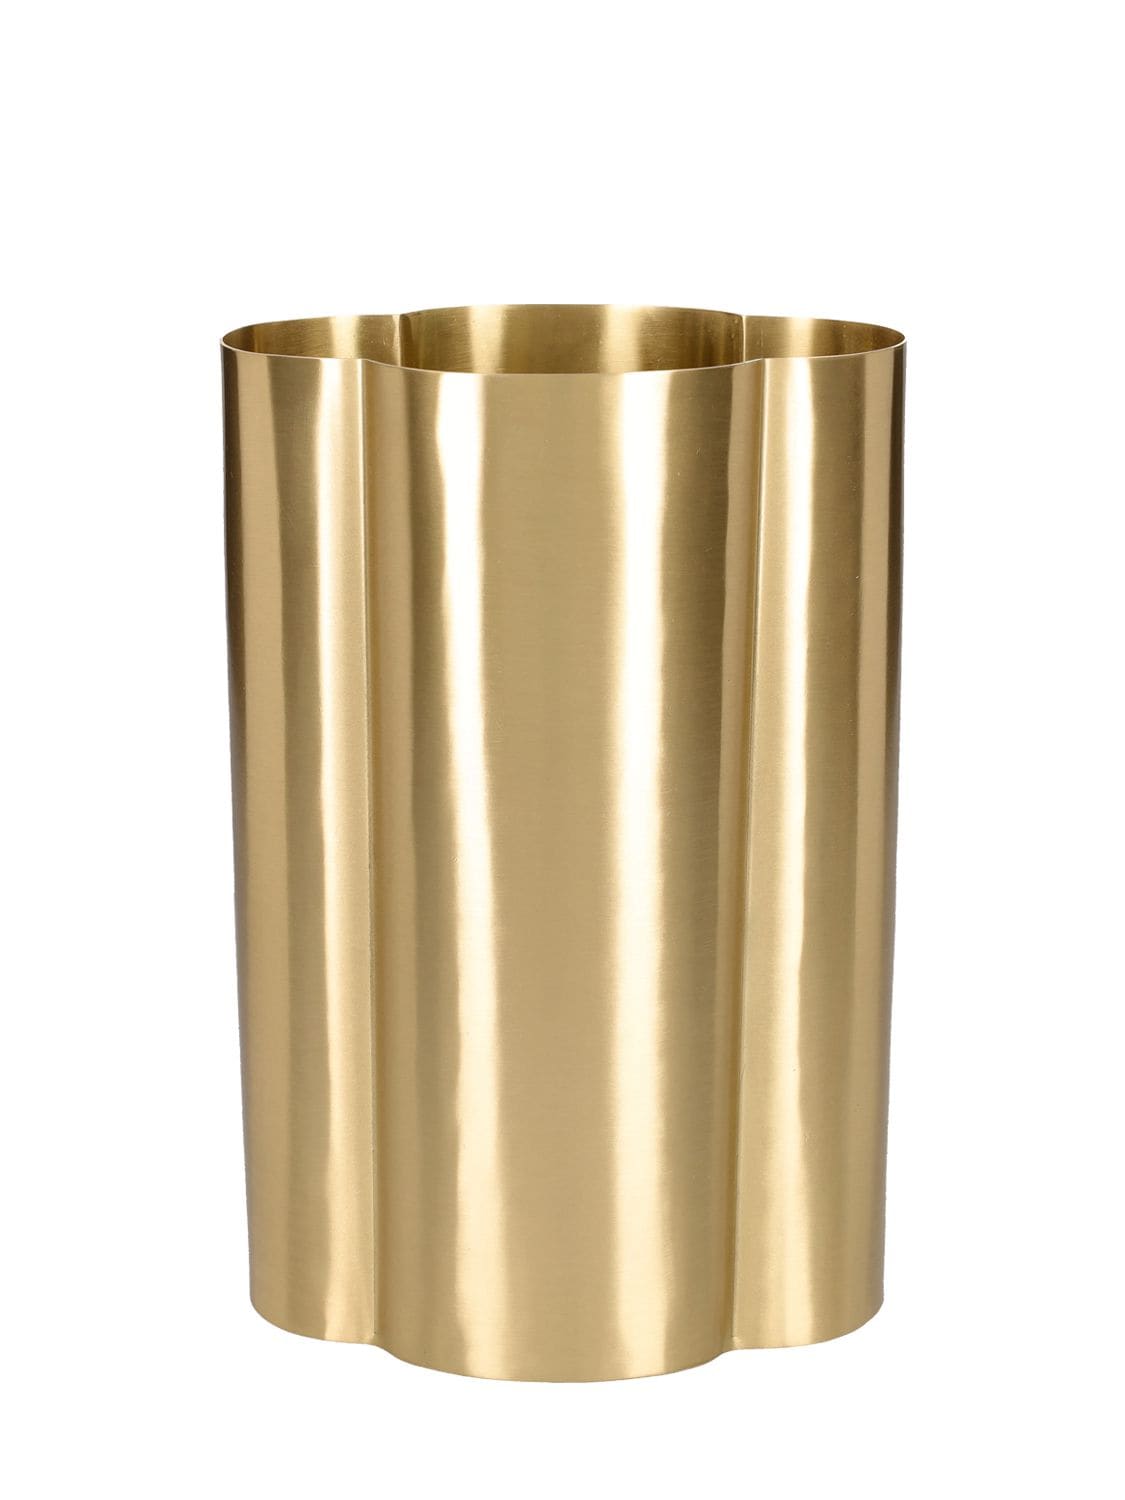 Armani/casa Move Vase In Gold